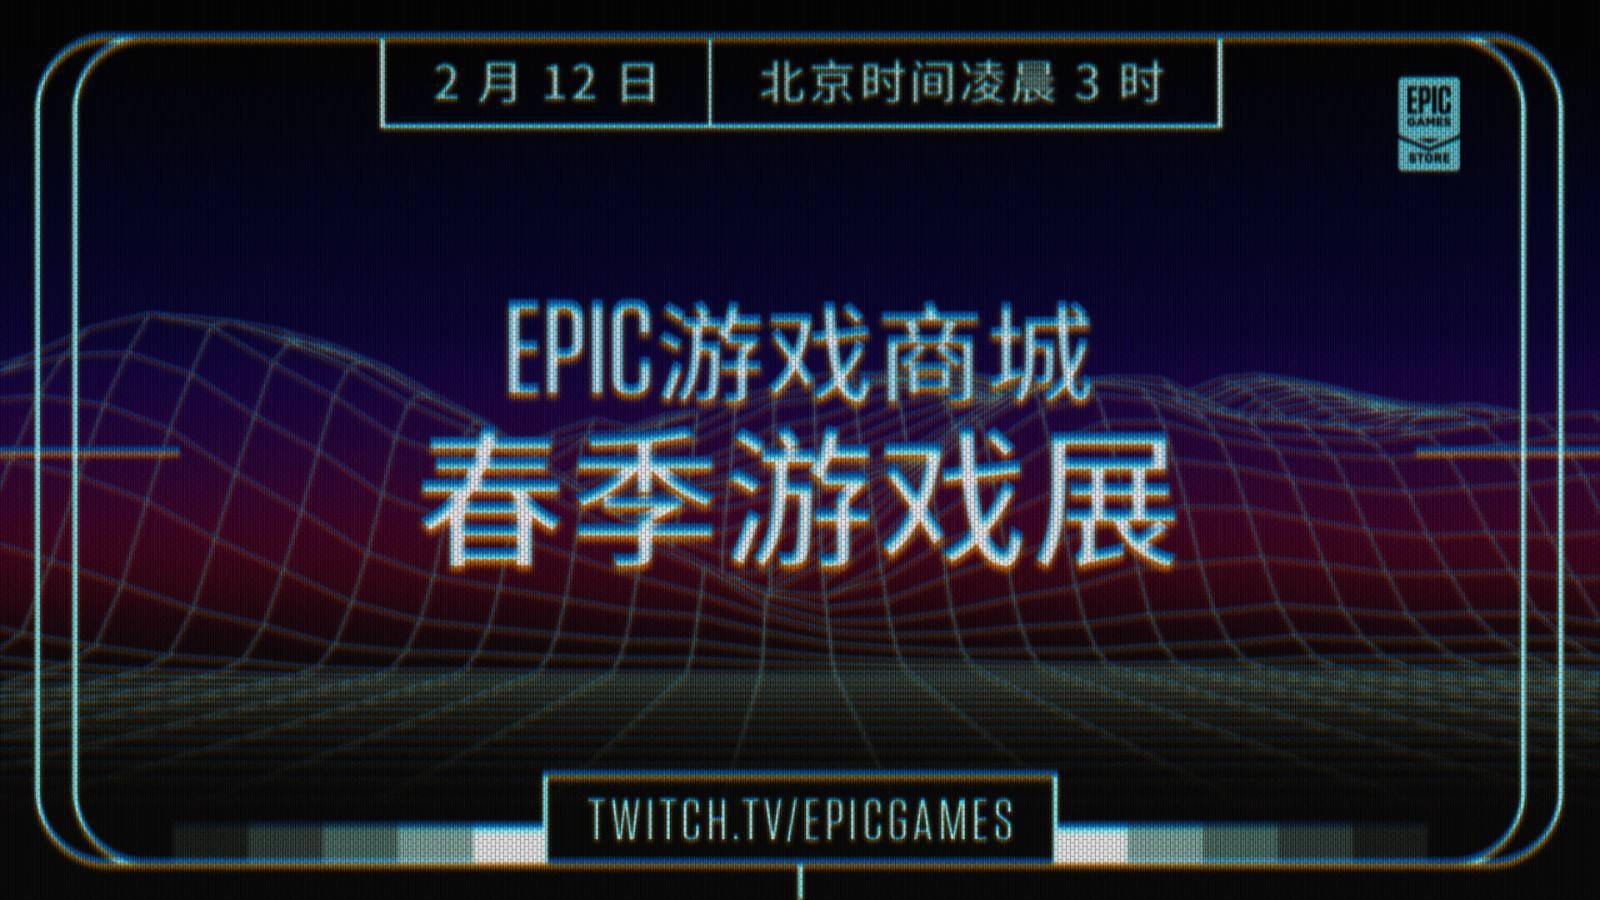 Epic将于2月12日举办春季游戏展及特卖活动_部分